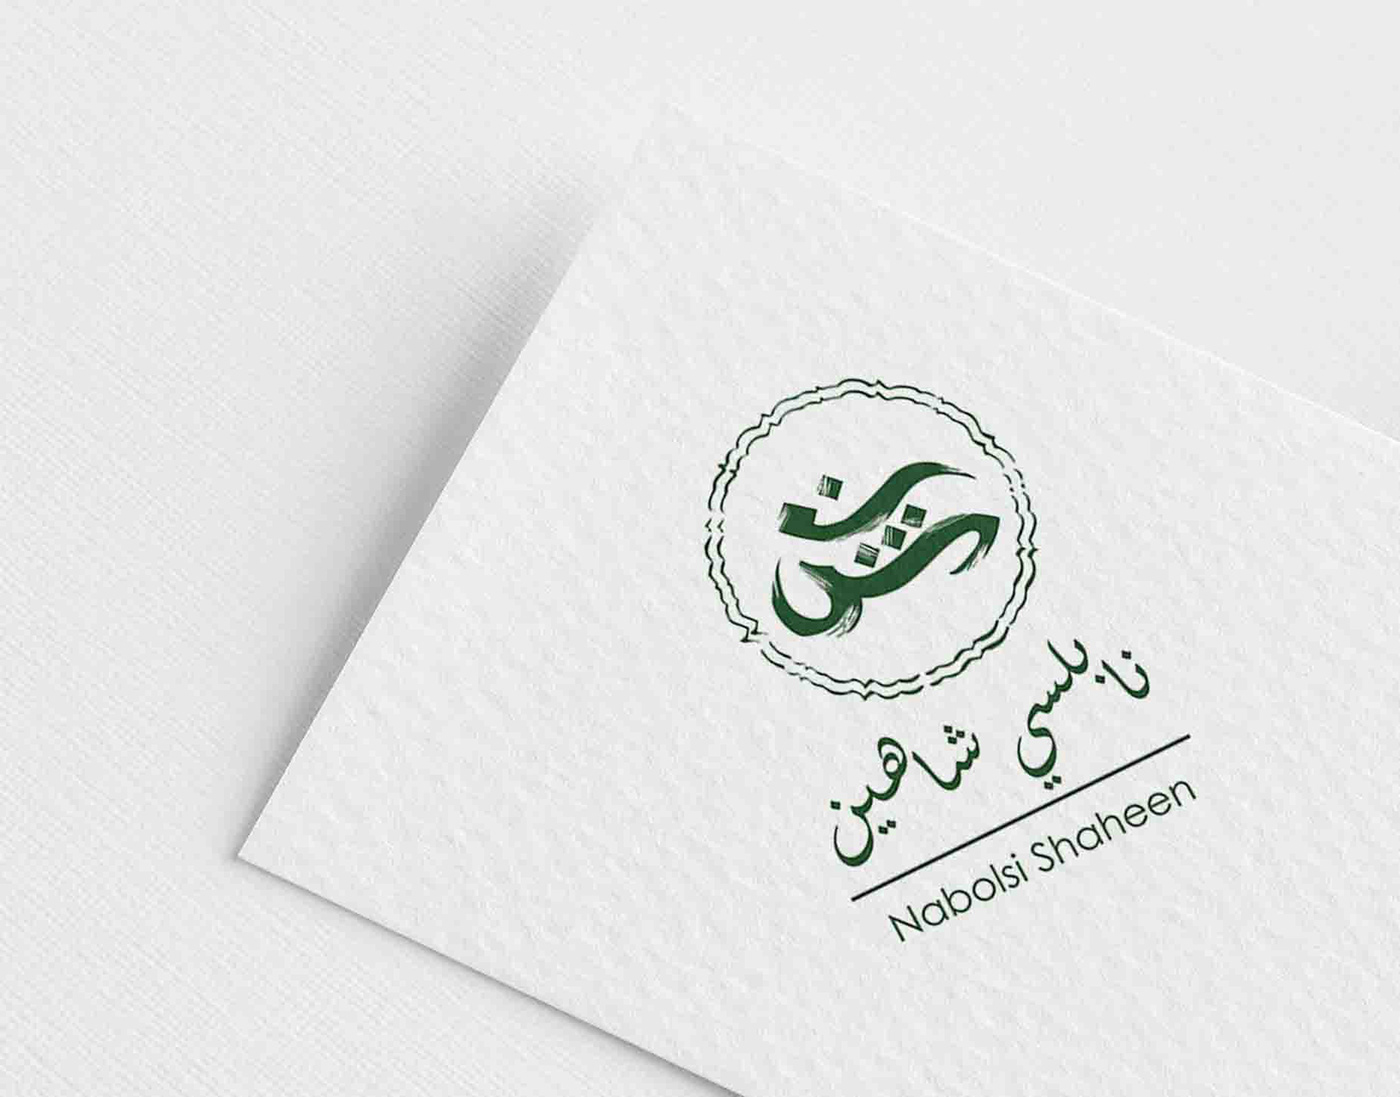 egypt Made in Egypt Corporate Identity logo rebranding Stationery vintage visual identity brand identity Branding design